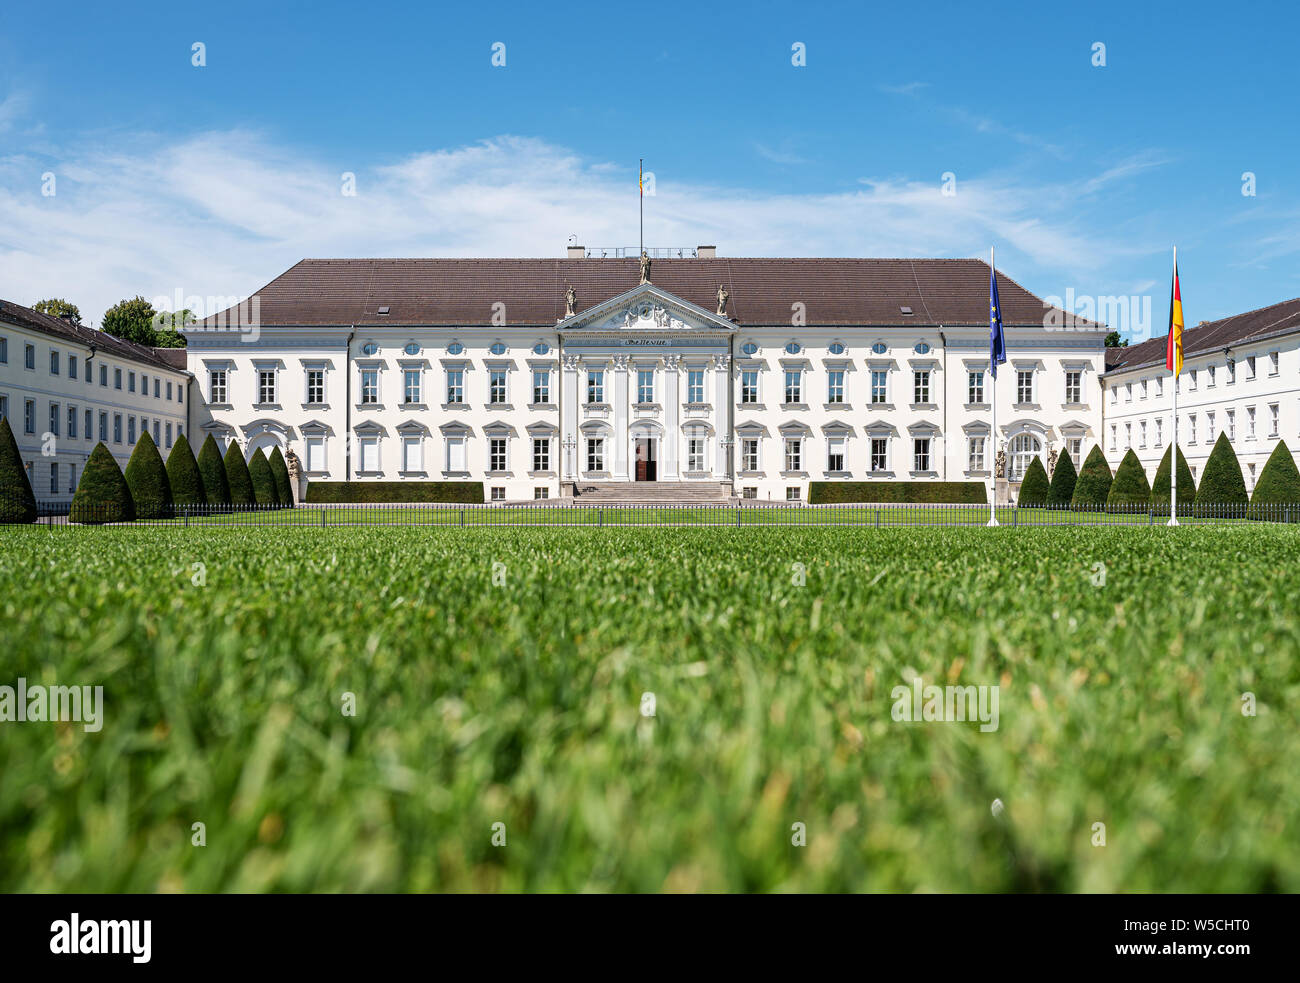 2019-07-24 Berlin, Germania: il Bellevue Palace, Schloss Bellevue, nel quartiere Tiergarten, residenza del Presidente della Repubblica federale di Germania Foto Stock